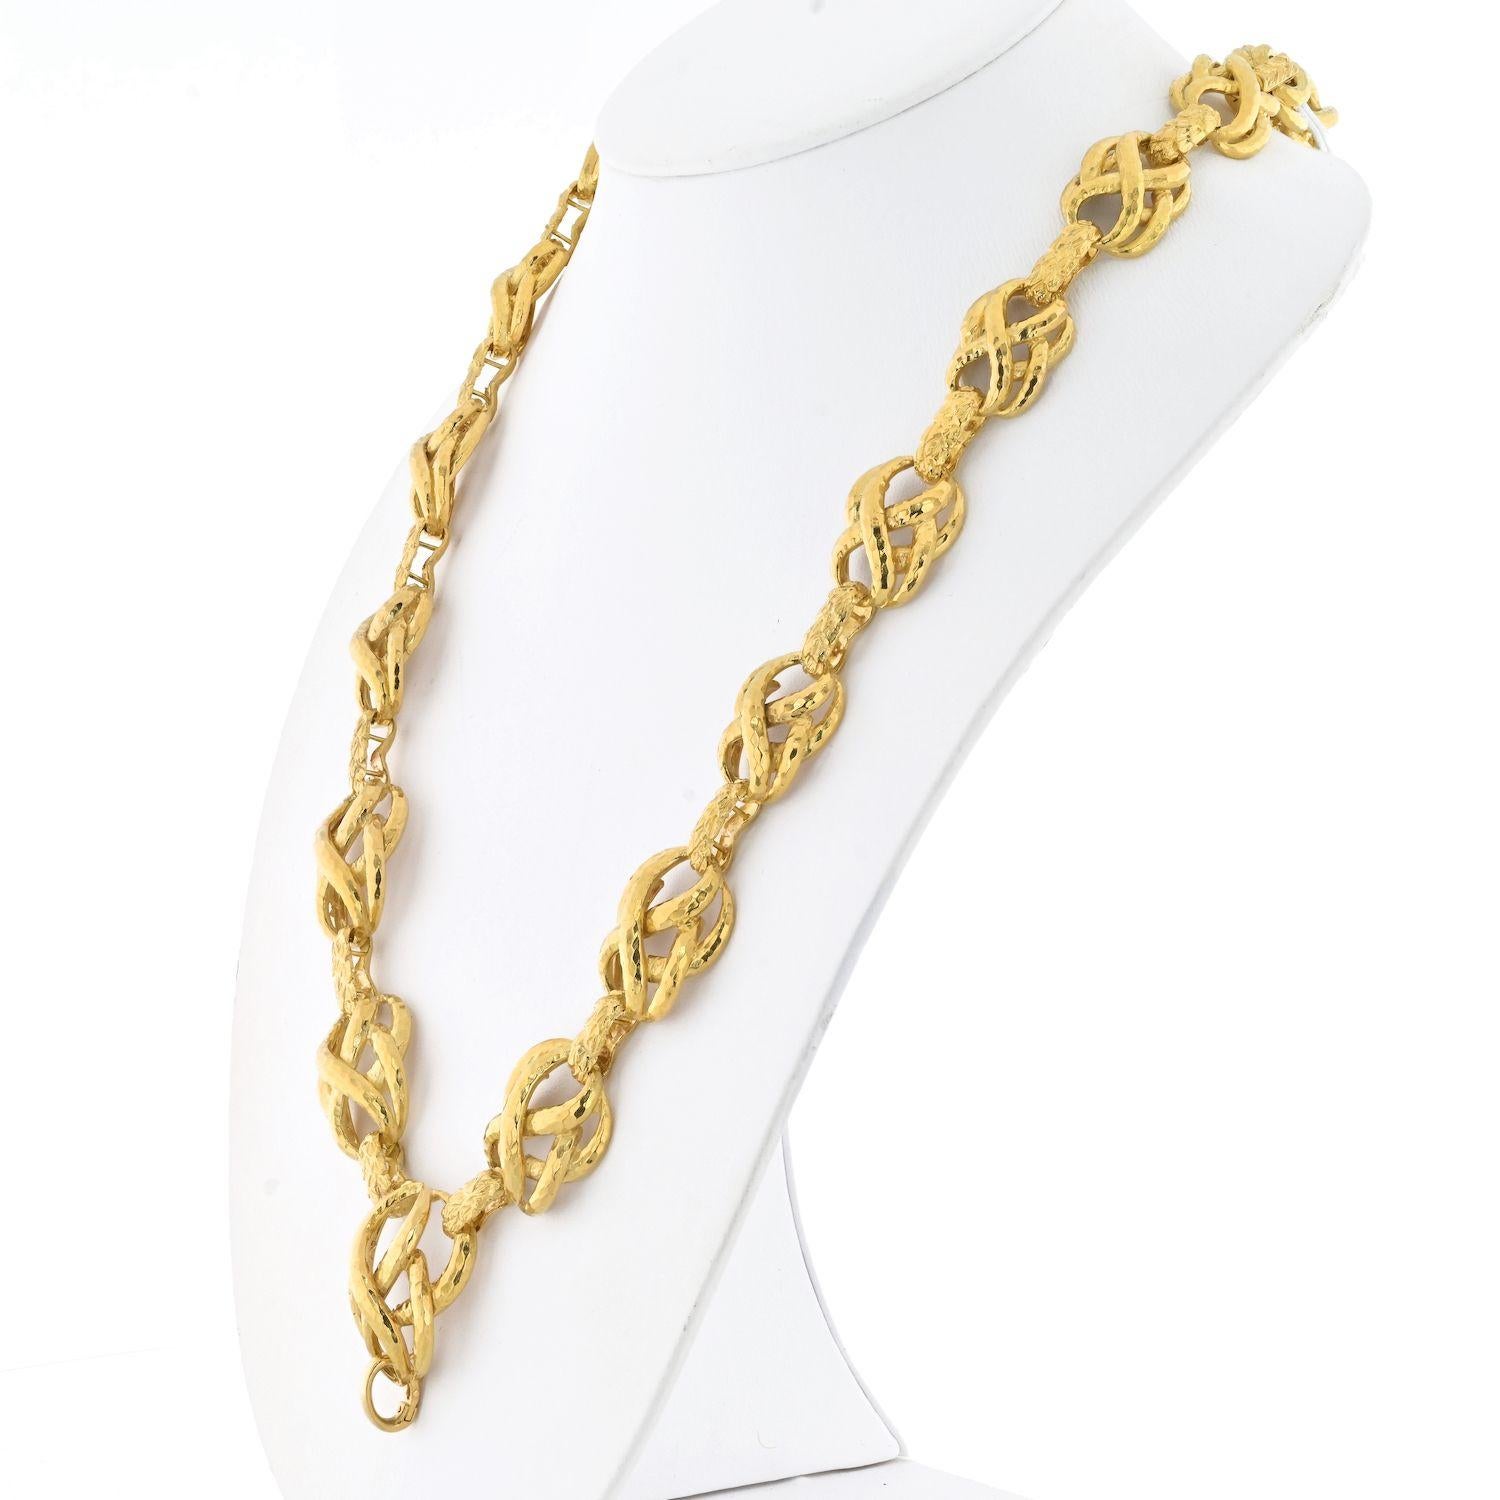 Werten Sie Ihre Schmucksammlung mit der zeitlosen Eleganz der David Webb 18K Yellow Gold Textured Twisted Link Necklace auf. Mit einer Länge von 25 Zoll ist dieses exquisite Stück ein Zeugnis für Webbs unvergleichliche Kunstfertigkeit. Die Halskette